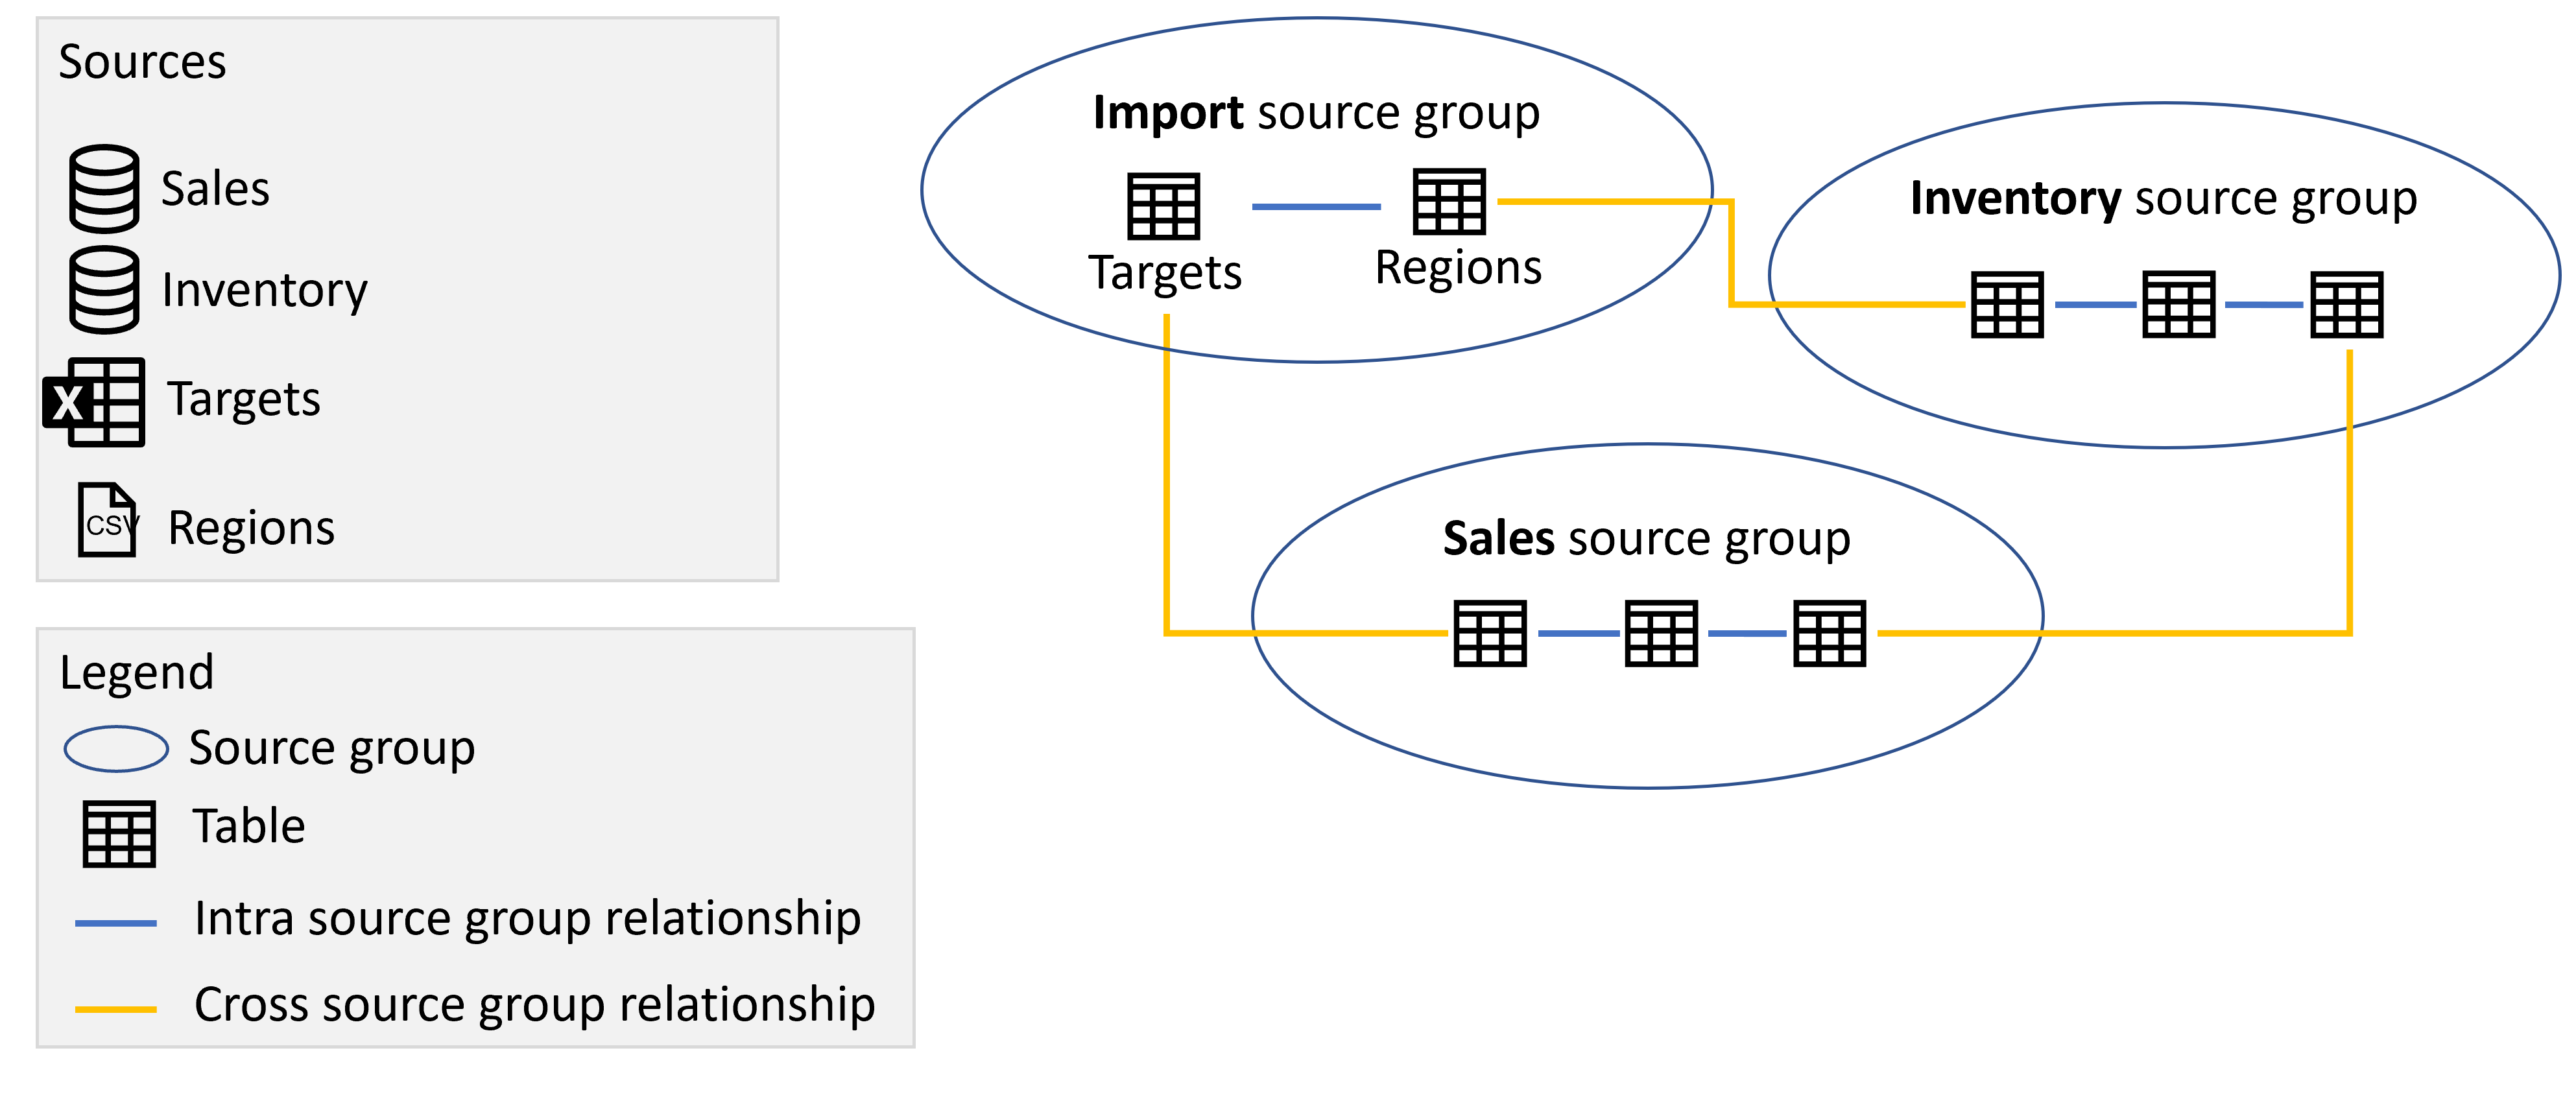 Схема, показывающая группы источников импорта, продаж и инвентаризации, содержащие таблицы из соответствующих источников и связей между исходными группами, как описано ранее.